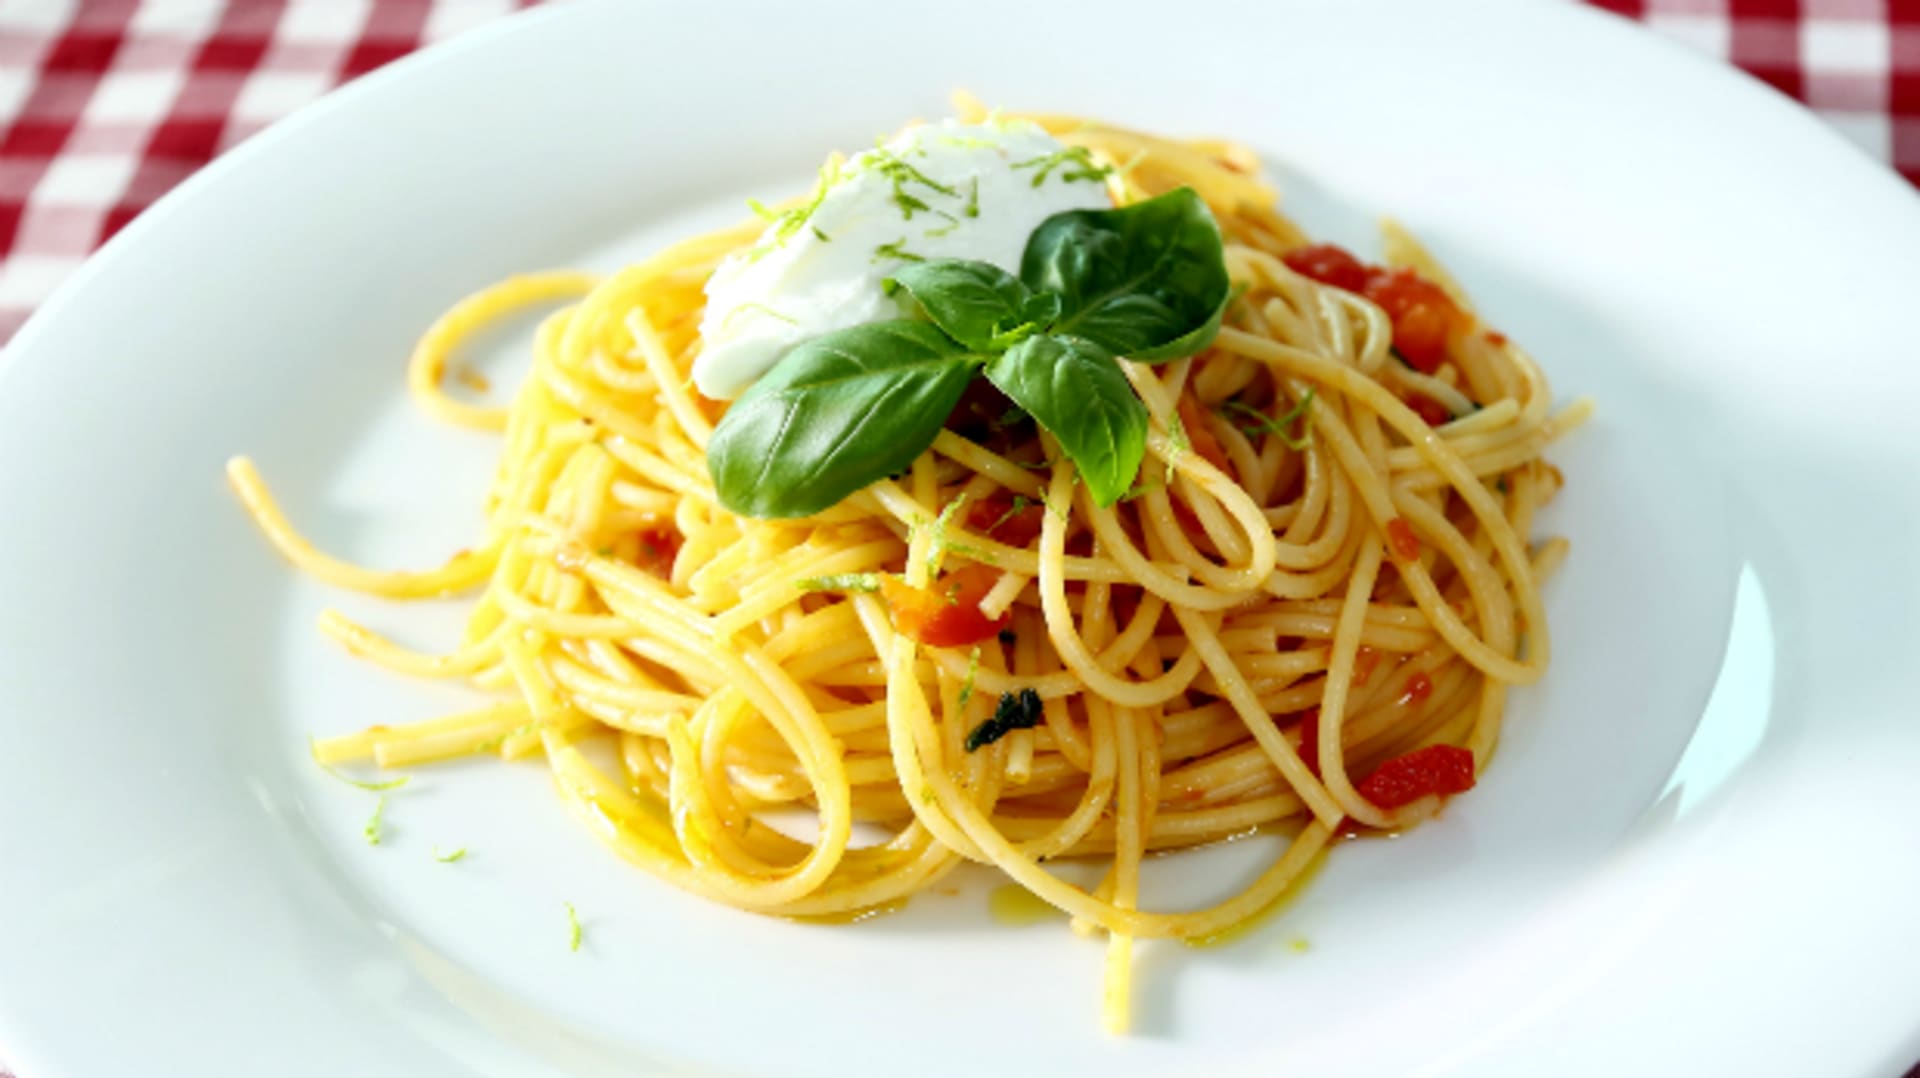 Spaghetti s rajčaty a ovčím sýrem